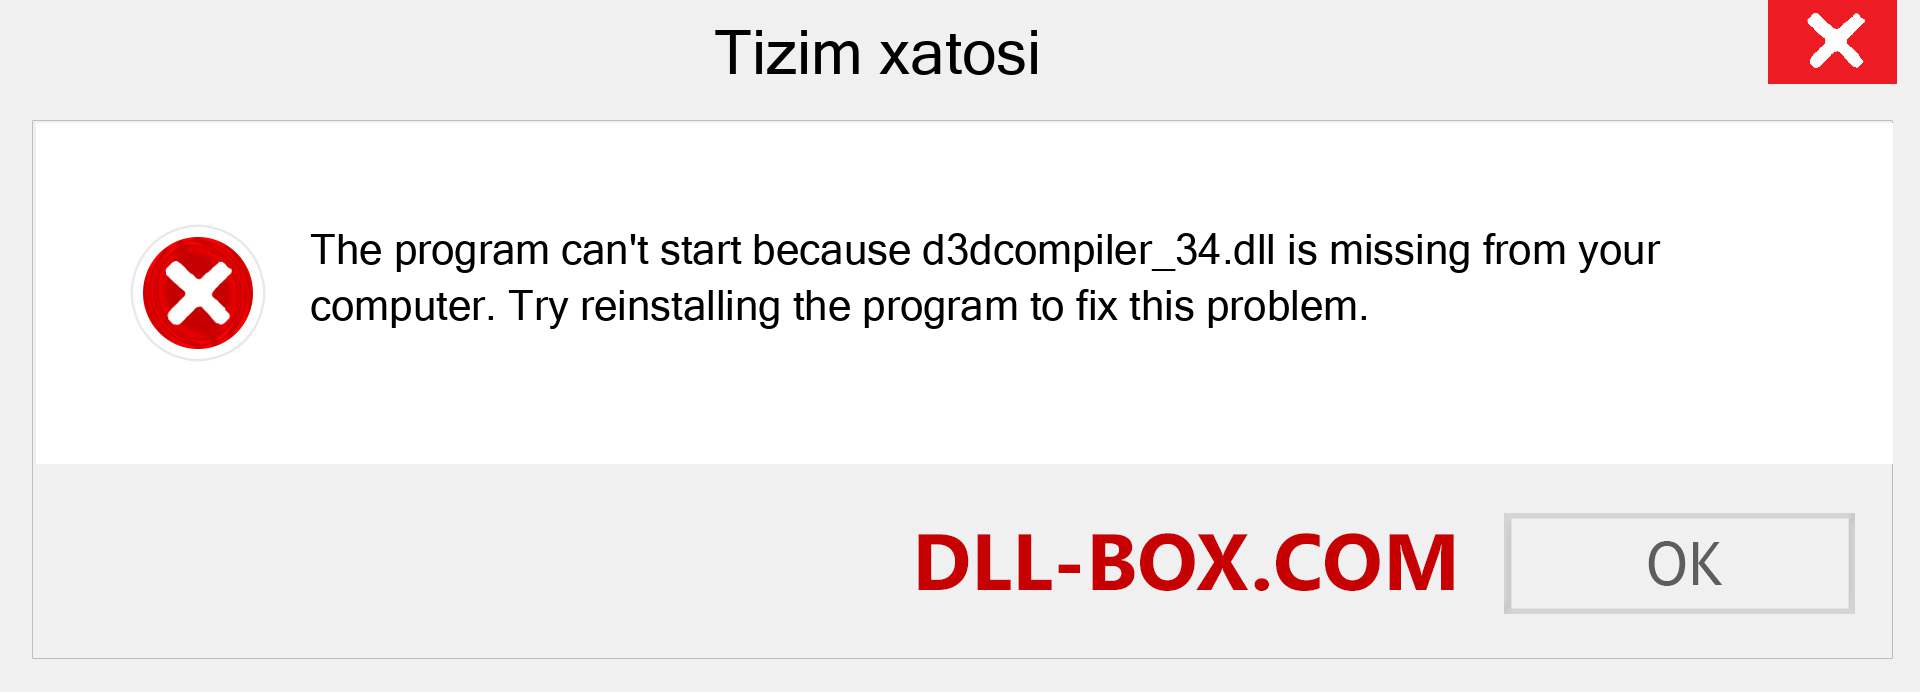 d3dcompiler_34.dll fayli yo'qolganmi?. Windows 7, 8, 10 uchun yuklab olish - Windowsda d3dcompiler_34 dll etishmayotgan xatoni tuzating, rasmlar, rasmlar